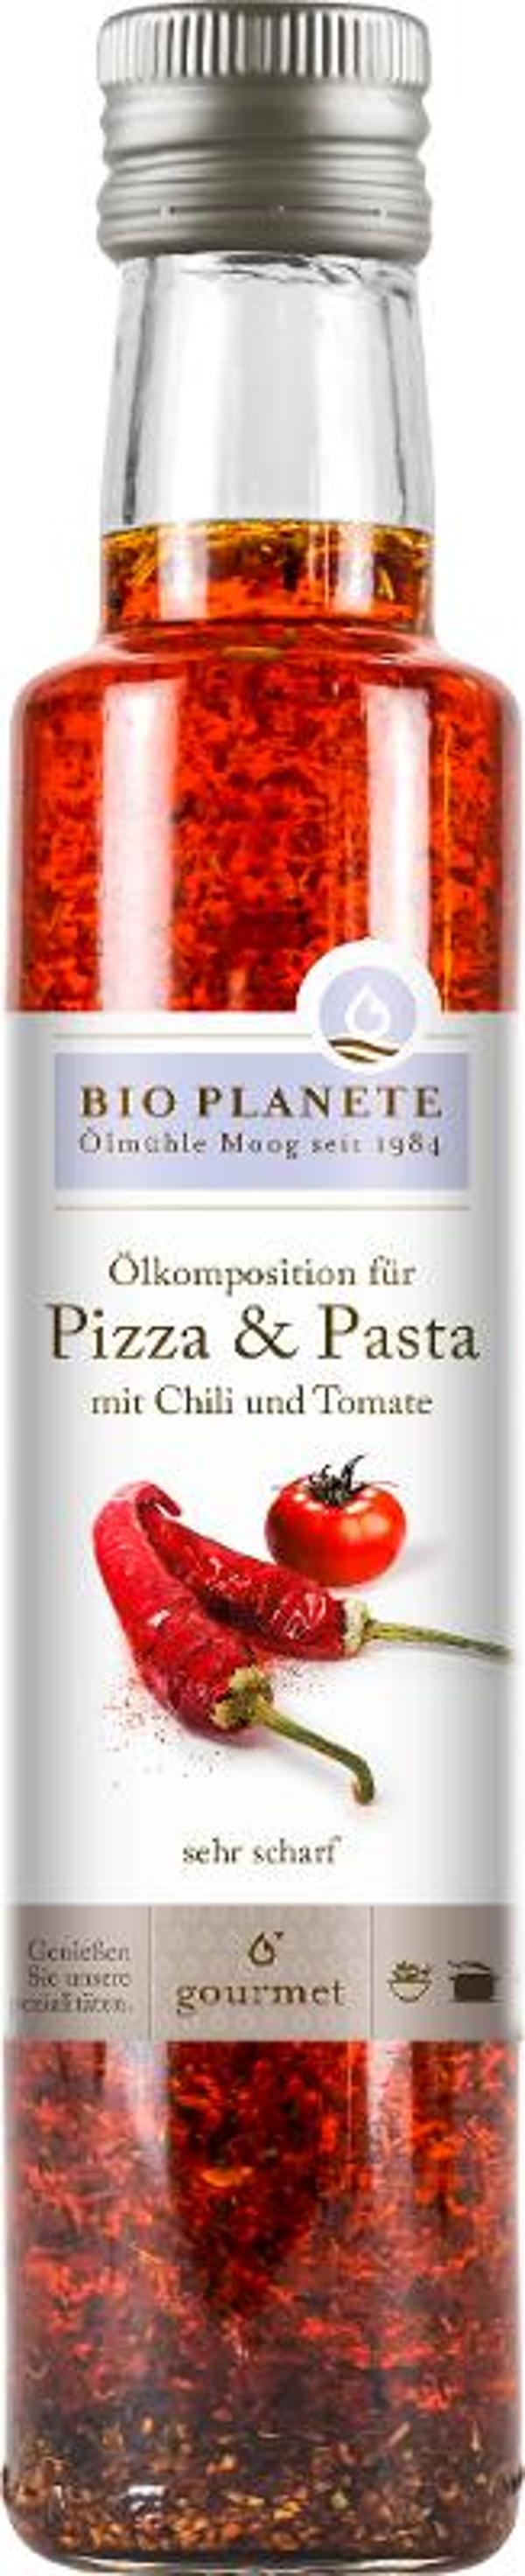 Produktfoto zu Ölkomposition für Pizza & Pasta